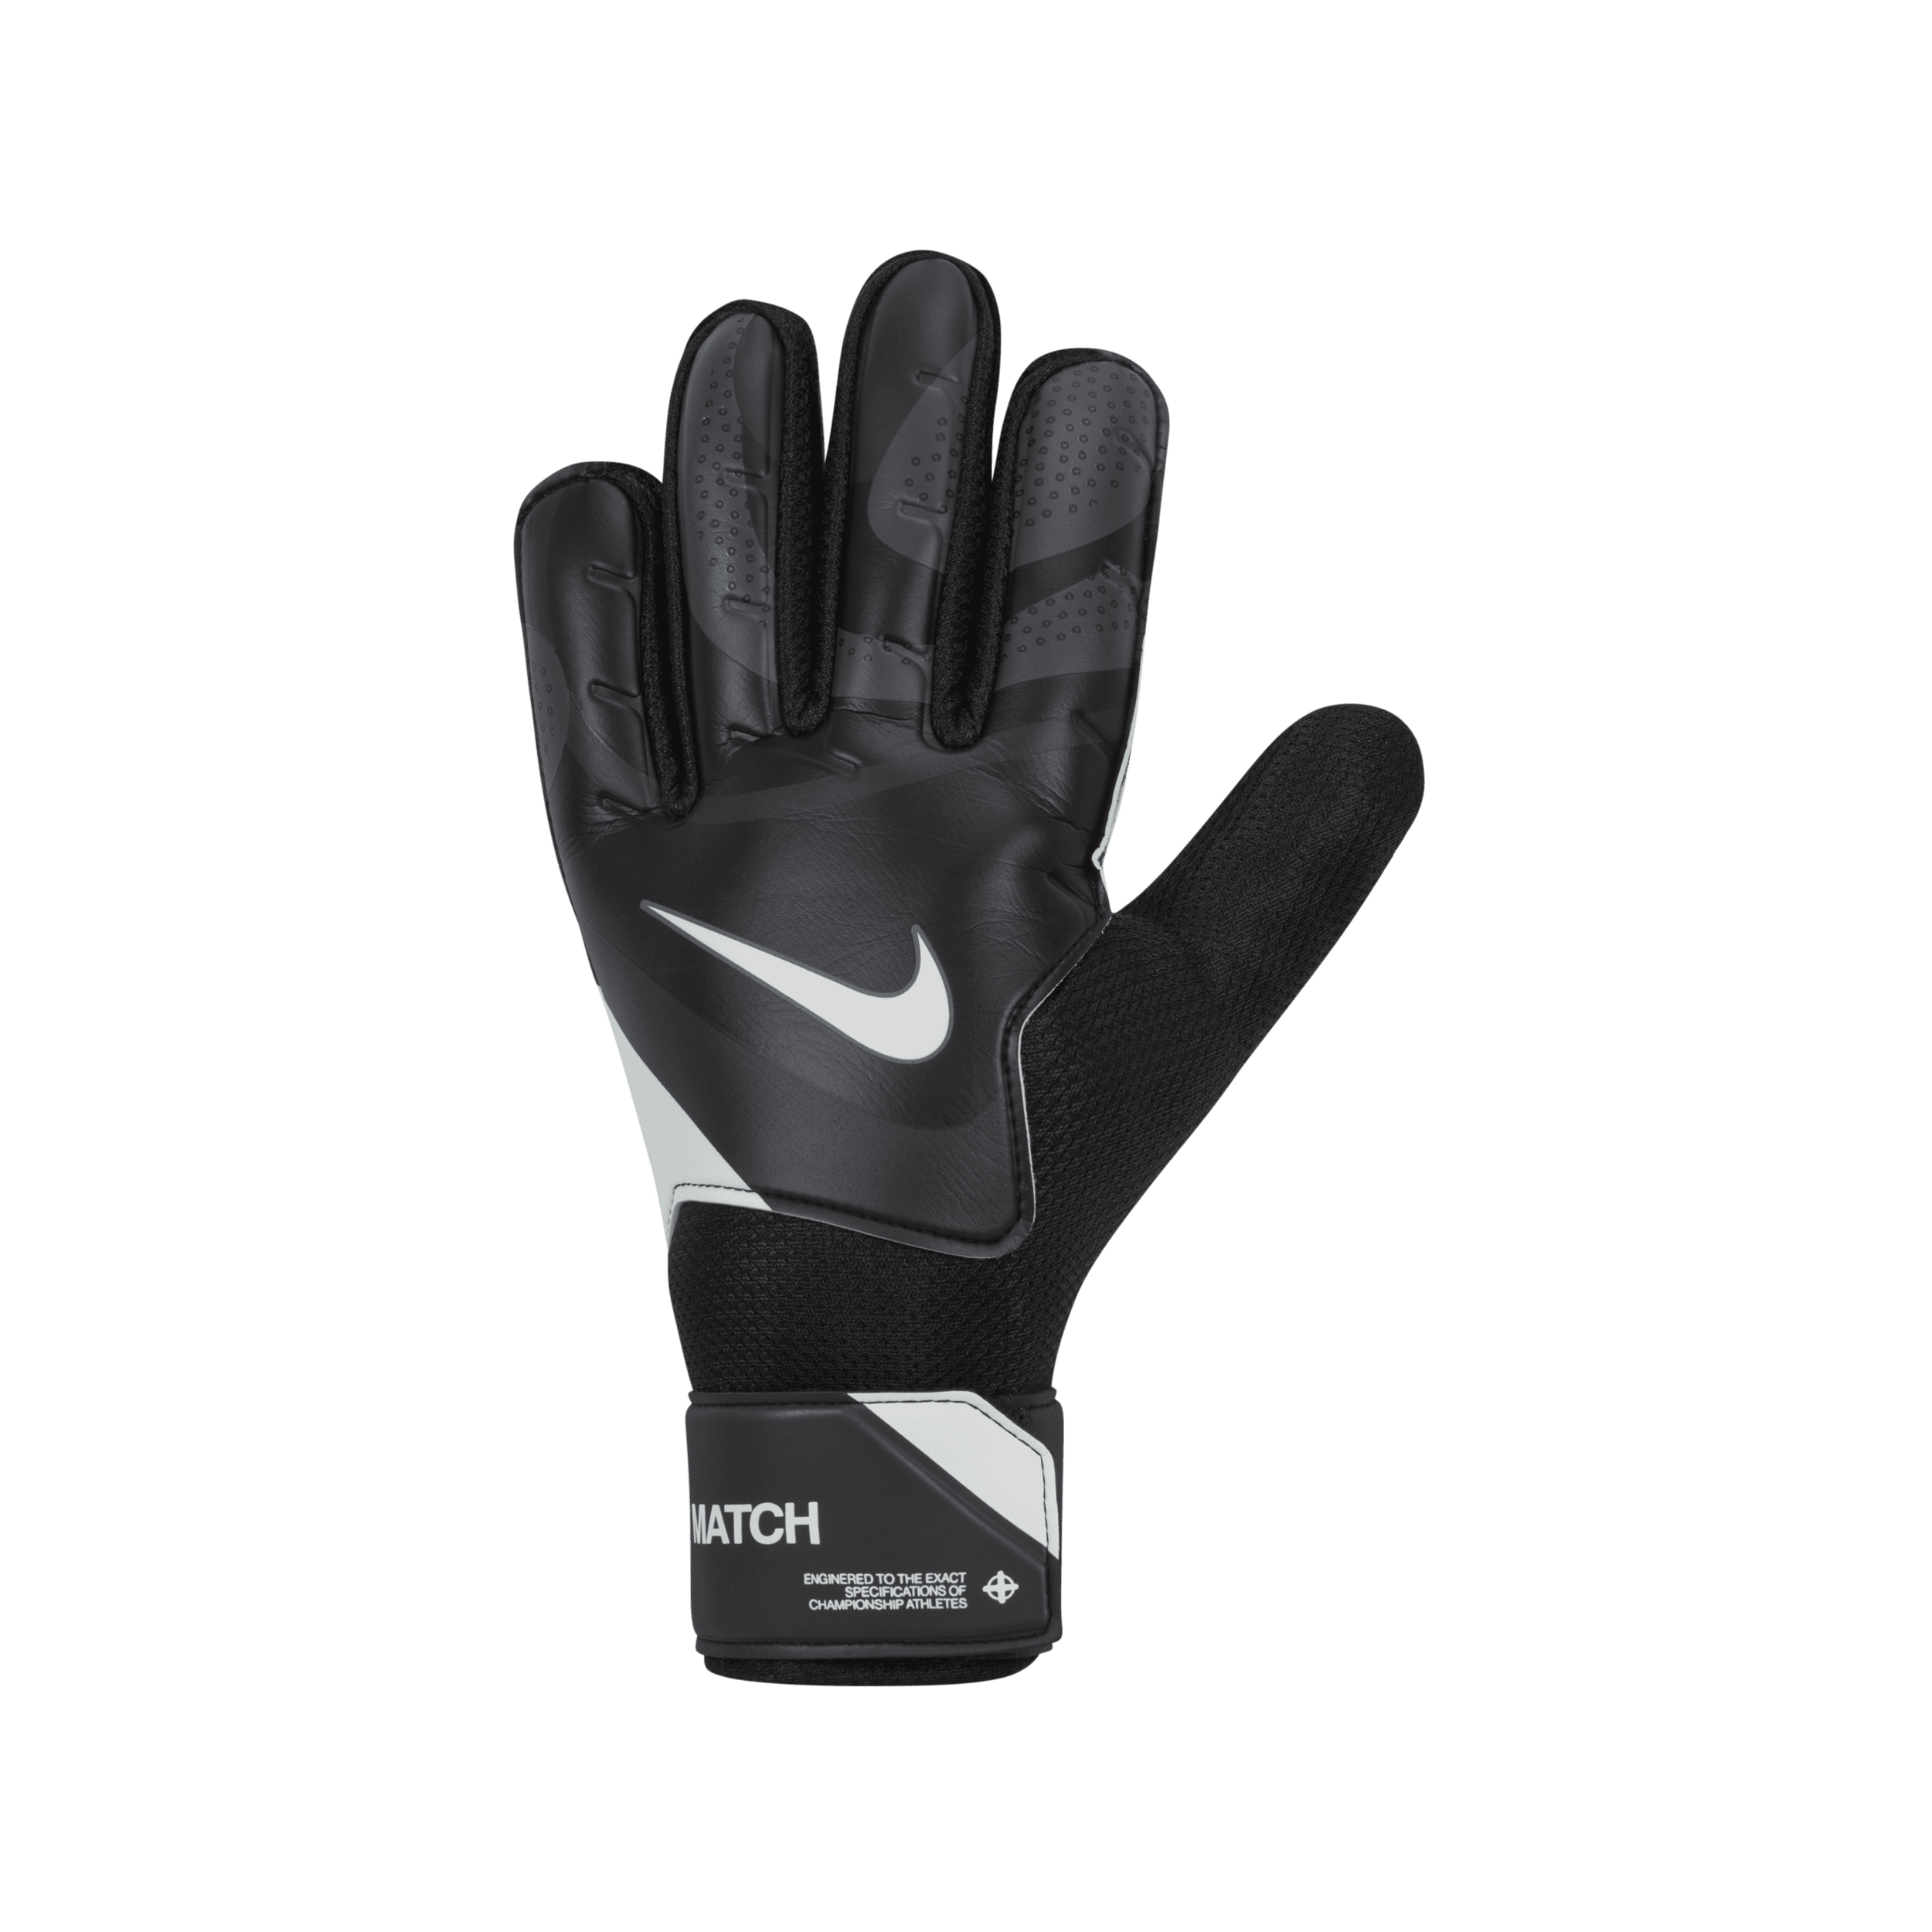 Nike Match-målmandshandsker til fodbold - sort